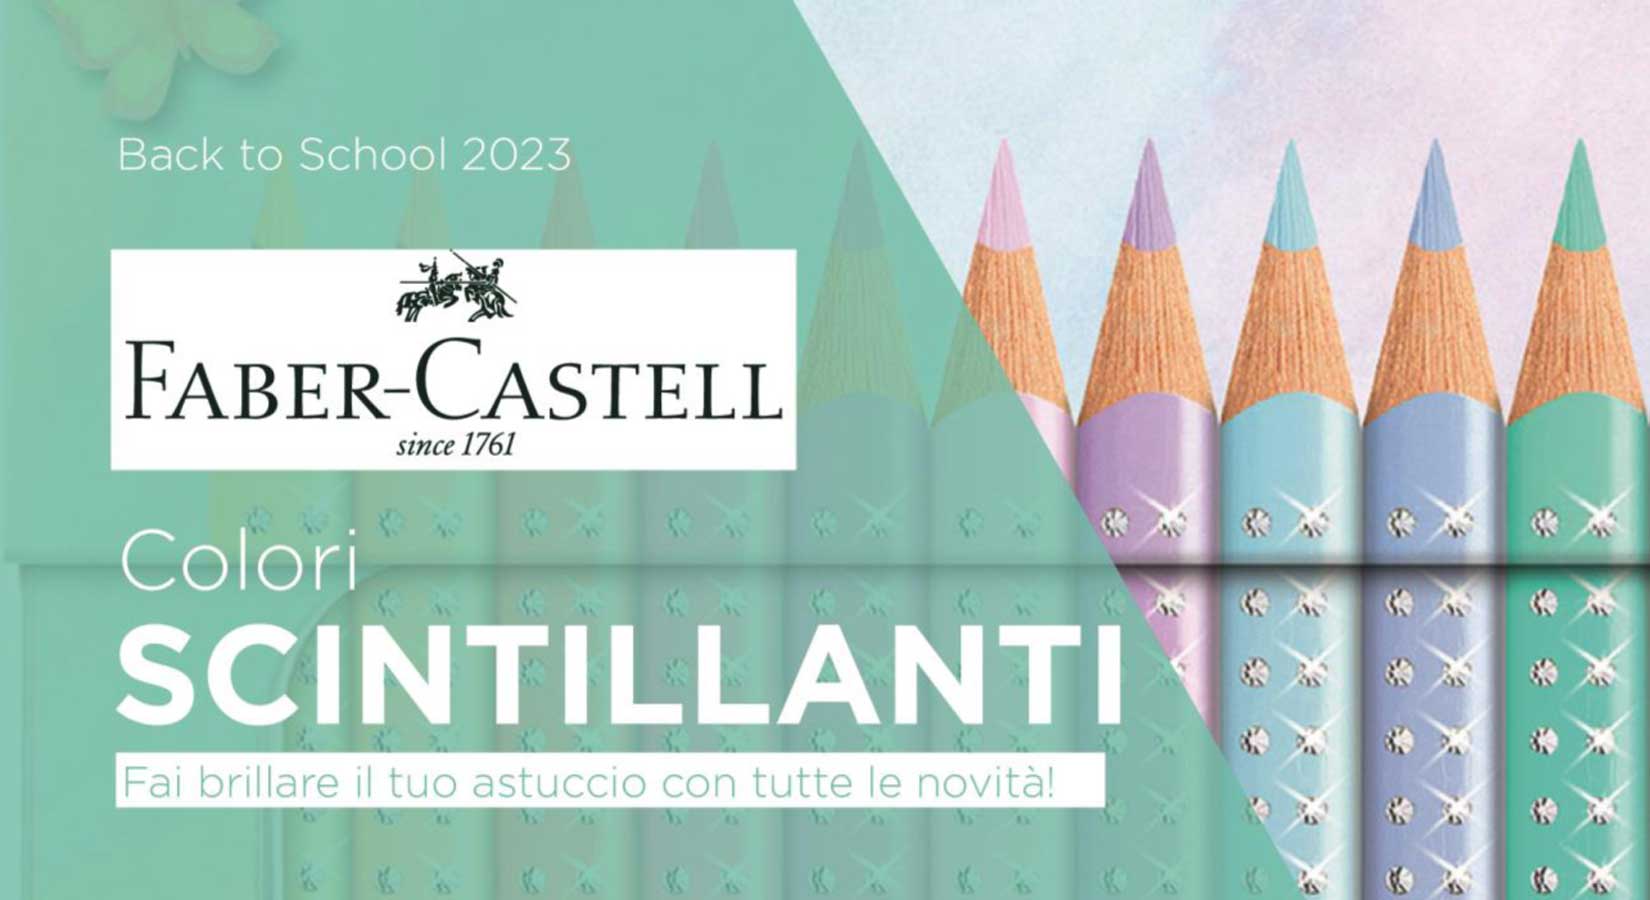 Colori scintillanti con Faber Castell per il back to school 2023